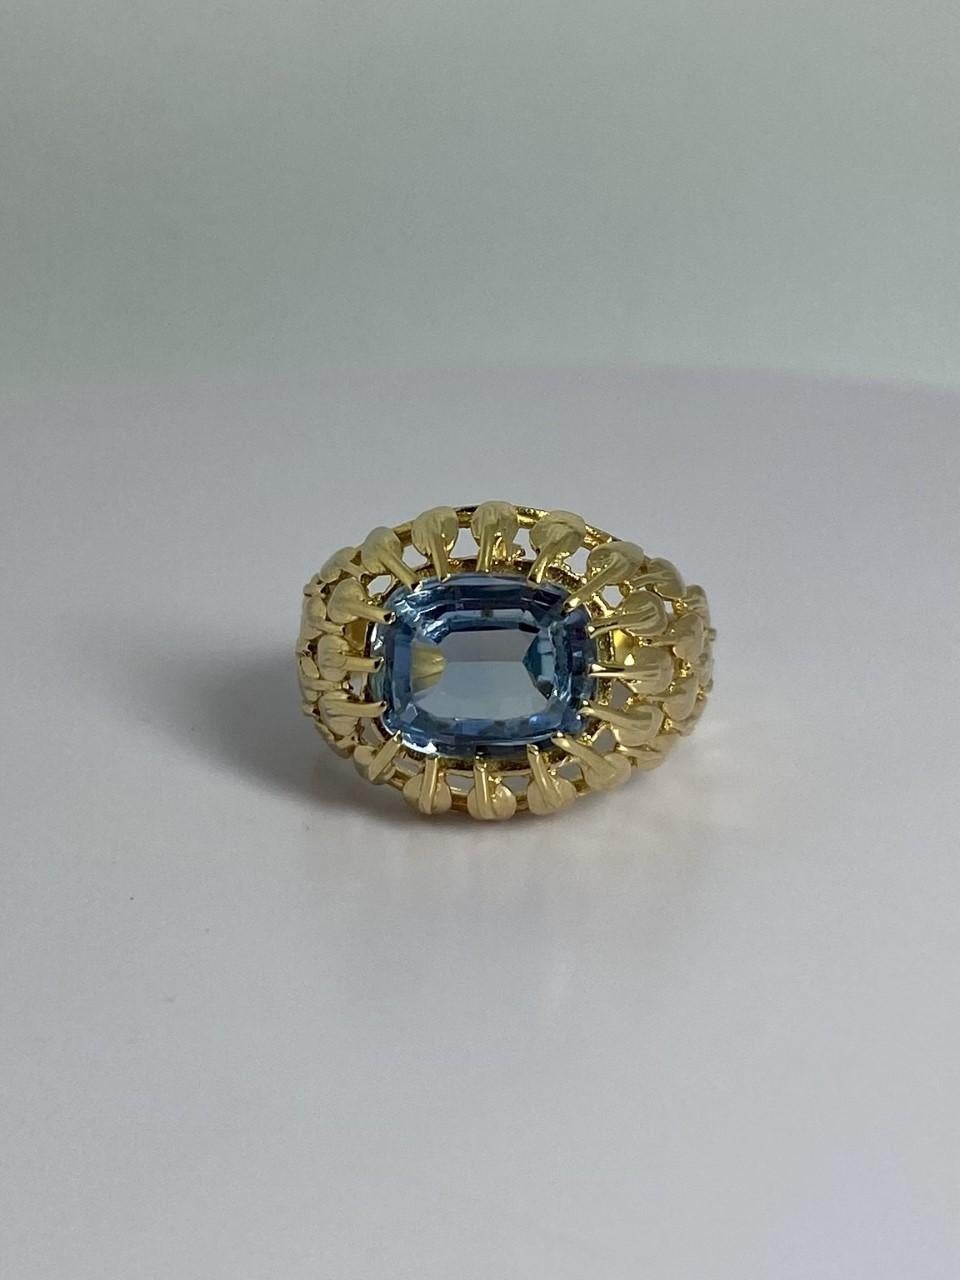 Ein Ring für Ihren Auftritt! Dieses gebrauchte Juwel ist aus 18 Karat Gelbgold mit einem blauen Spinell. Der ovale blaue Spinell ist smaragdgrün facettiert.  Schauen Sie sich die Bilder genau an und sehen Sie das detailliert gearbeitete Band dieses